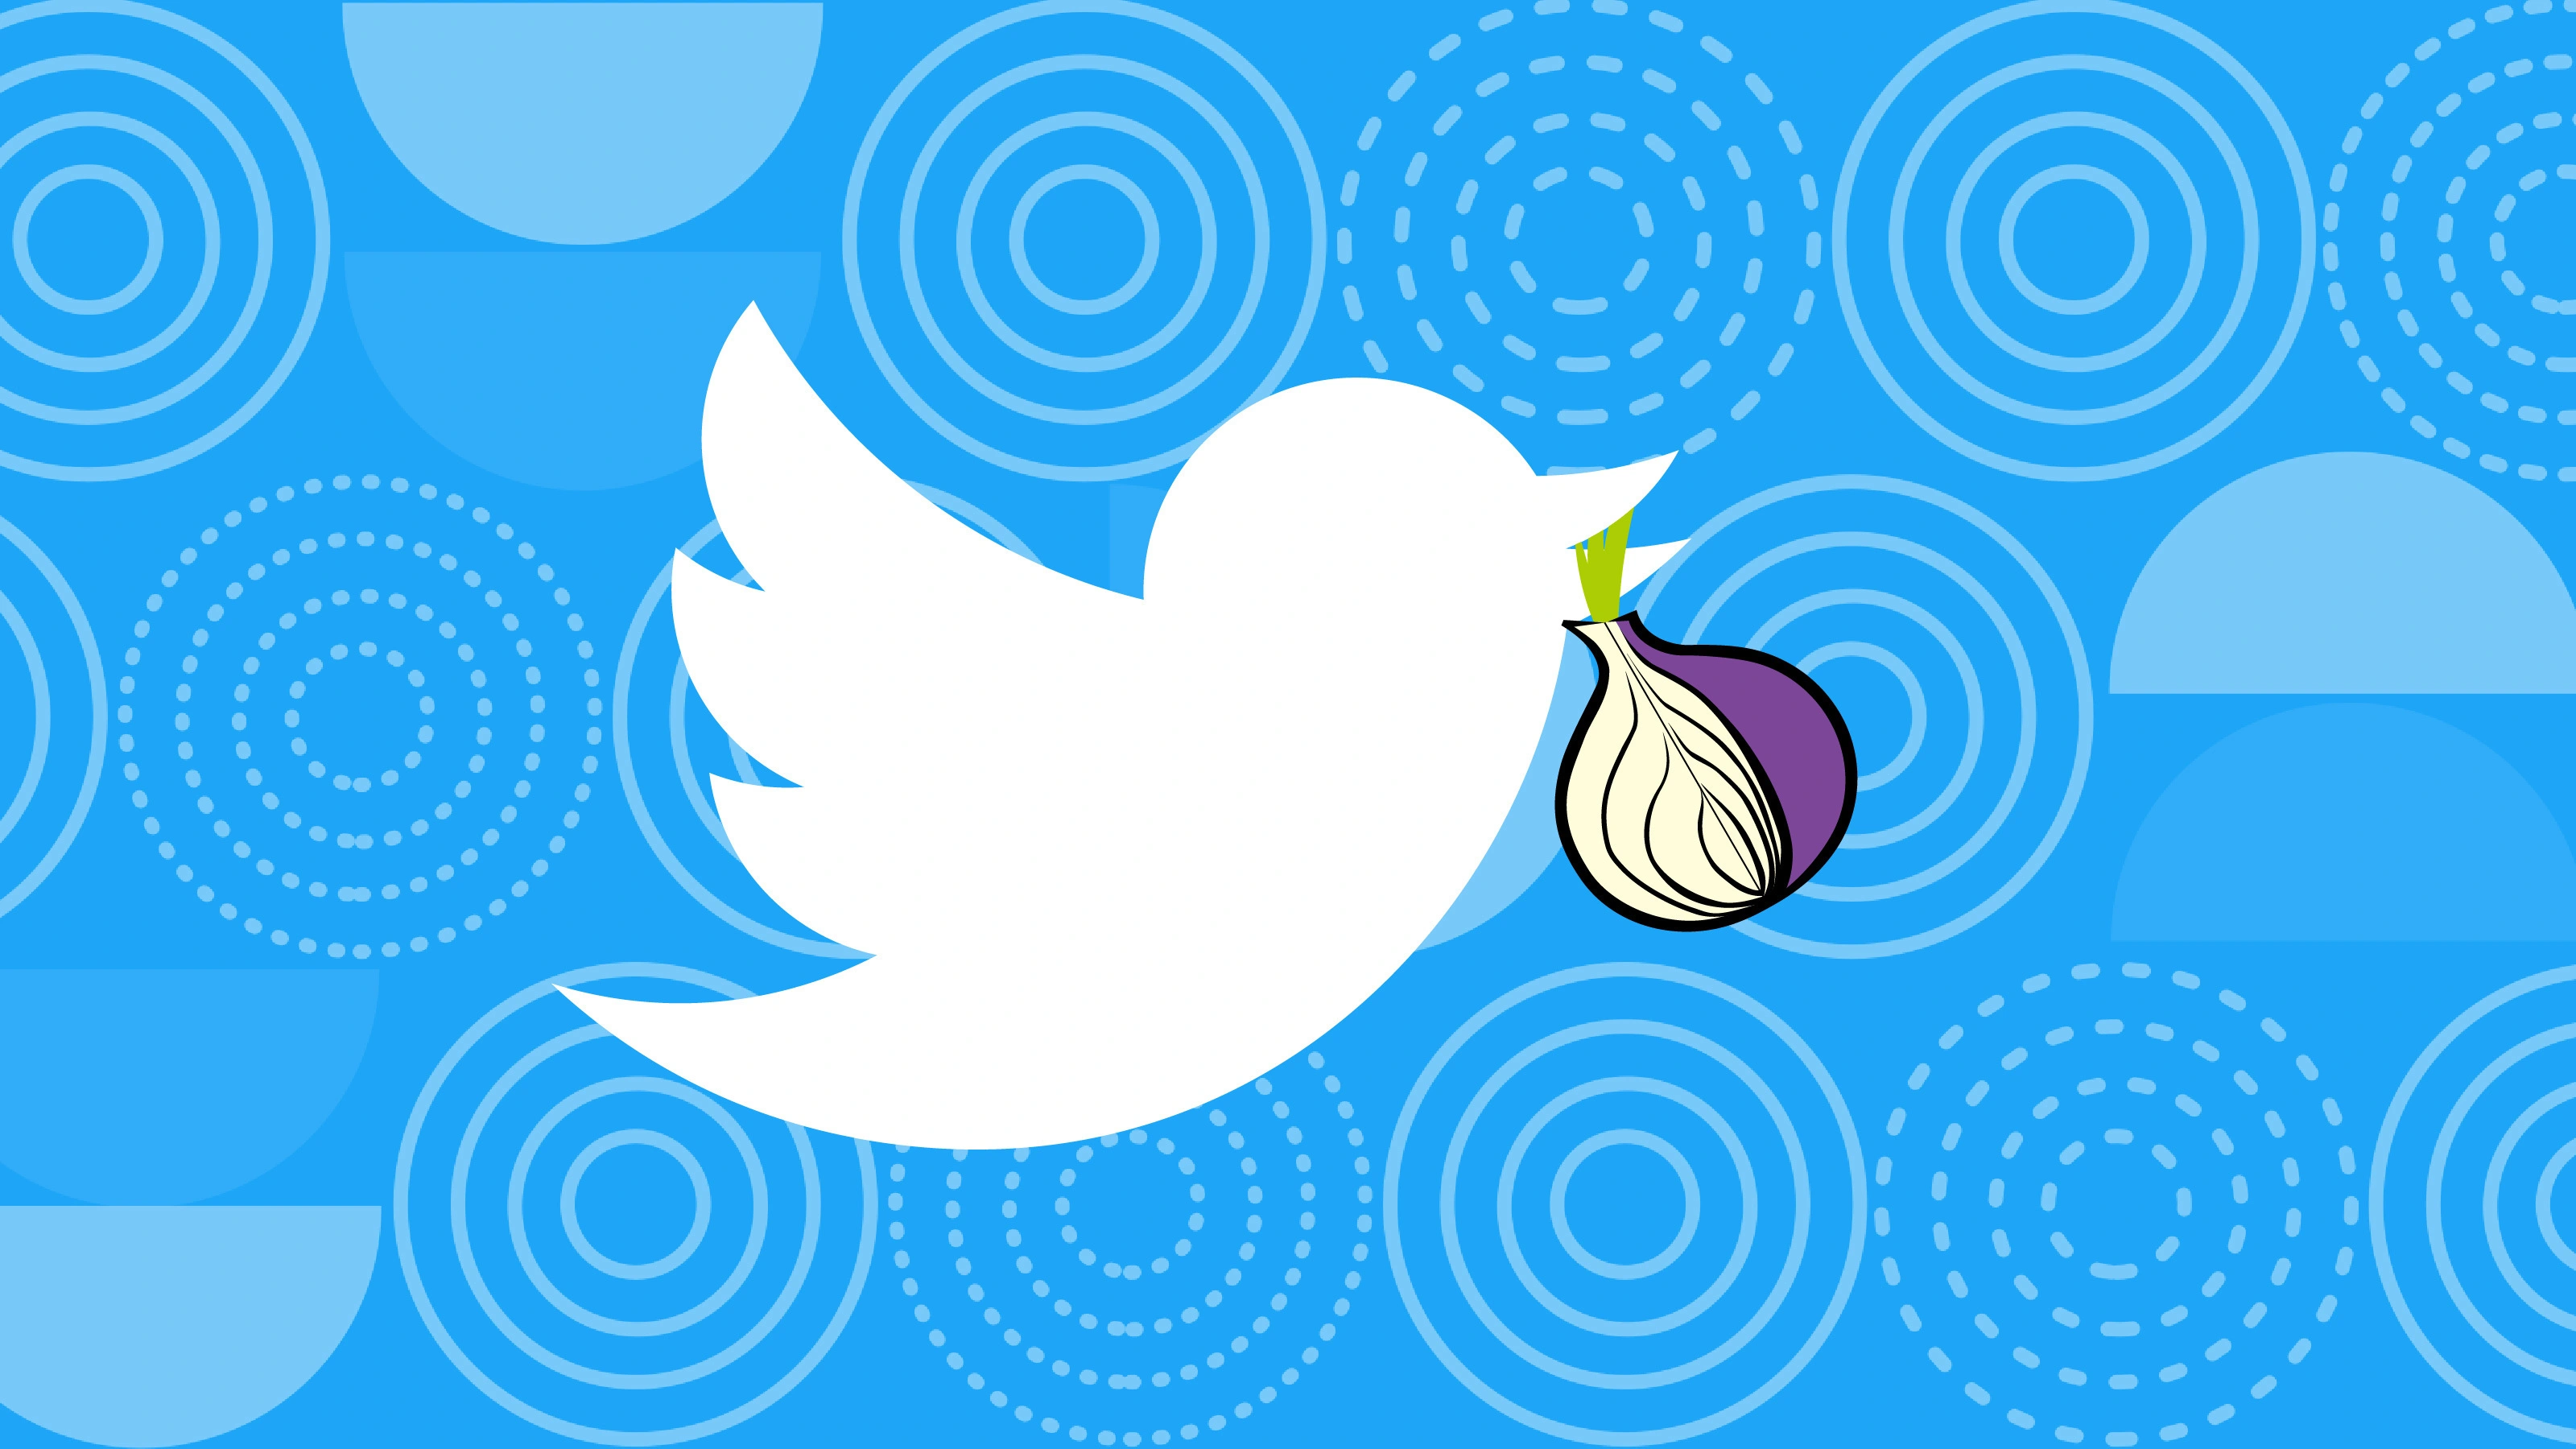 Социальная сеть Twitter объявила о запуске своего веб-приложения в сети Tor